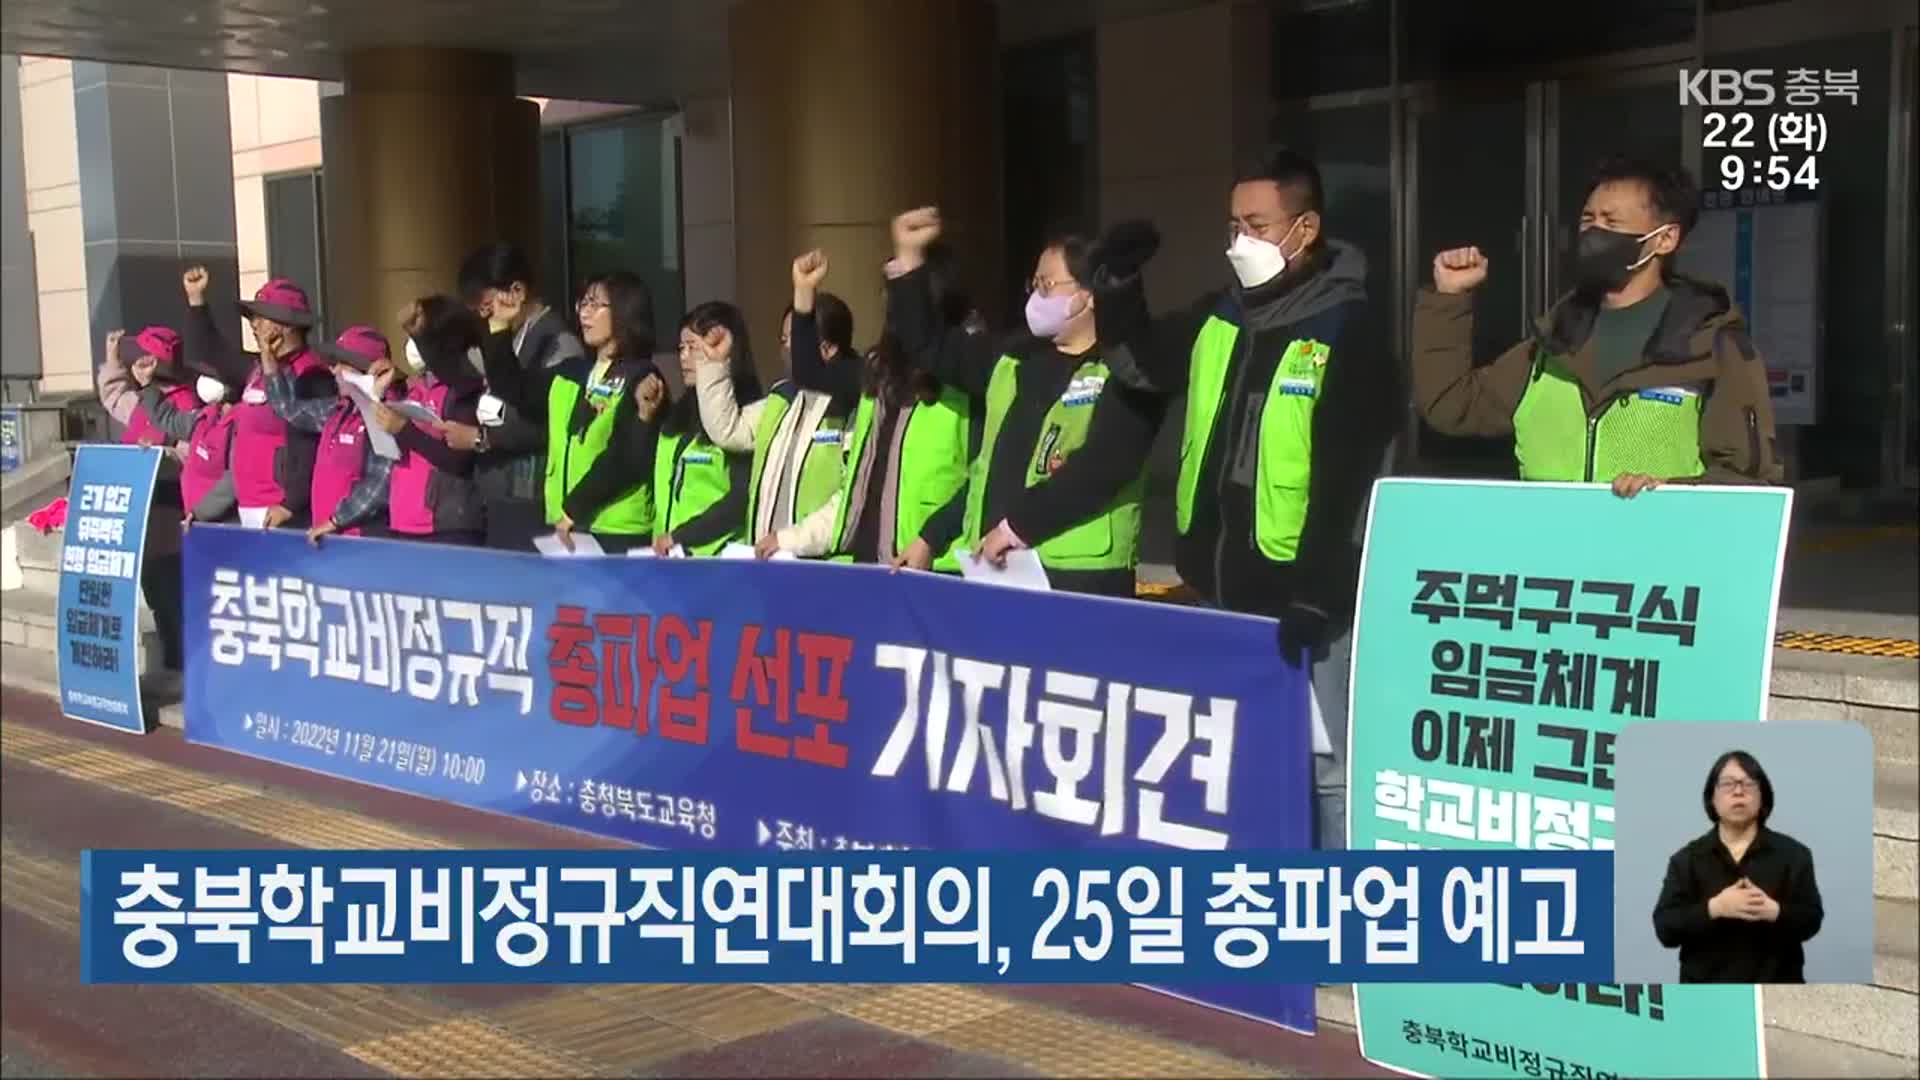 충북학교비정규직연대회의, 25일 총파업 예고